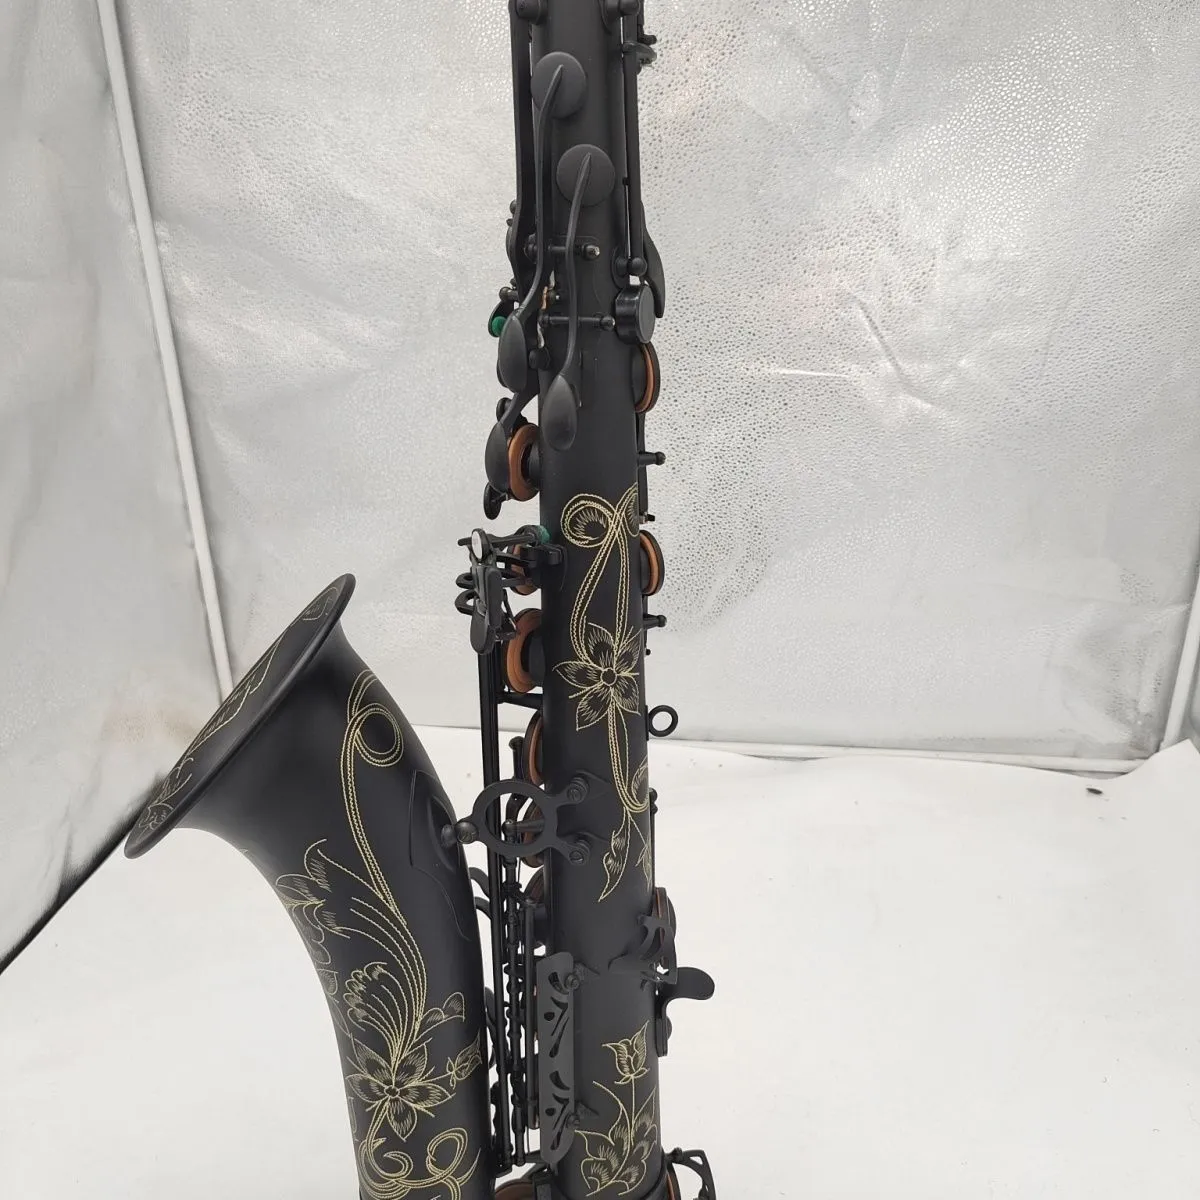 Czarny matowy b-tone profesjonalny saksofon saksofonowy antyczne rzemieślnicze kunszt pięknie rzeźbiony ton saksofonu